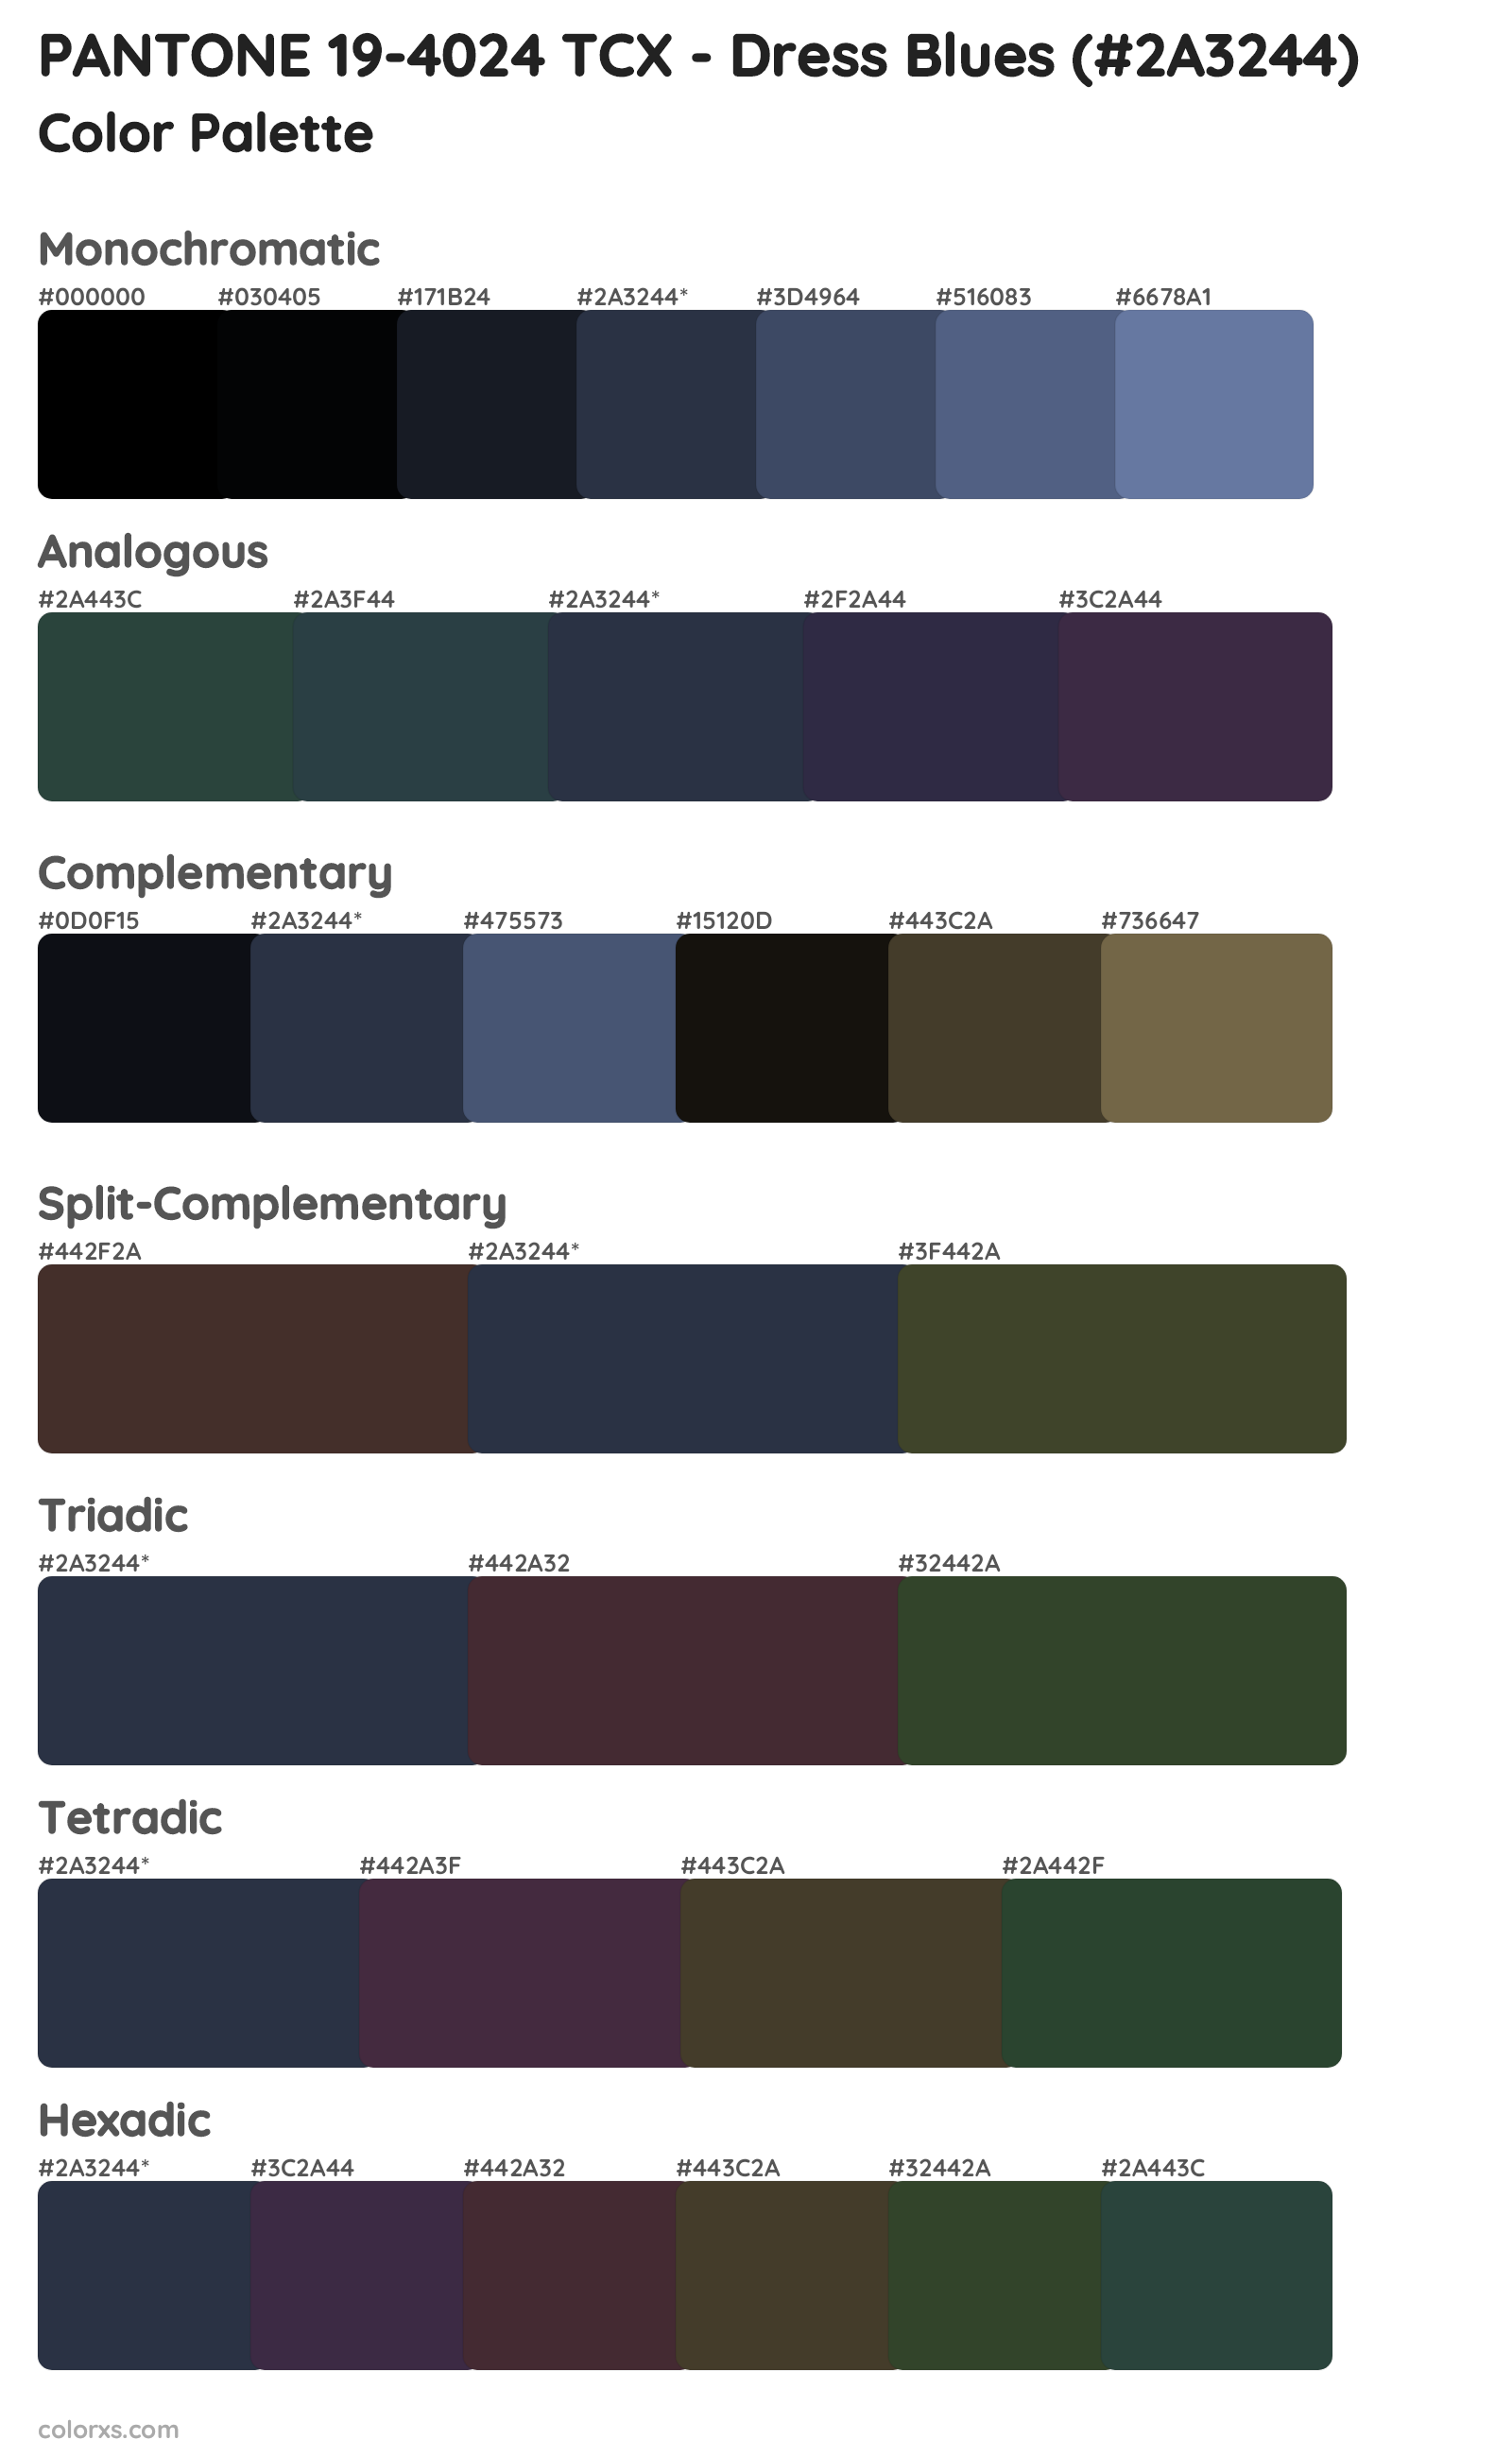 PANTONE 19-4024 TCX - Dress Blues Color Scheme Palettes